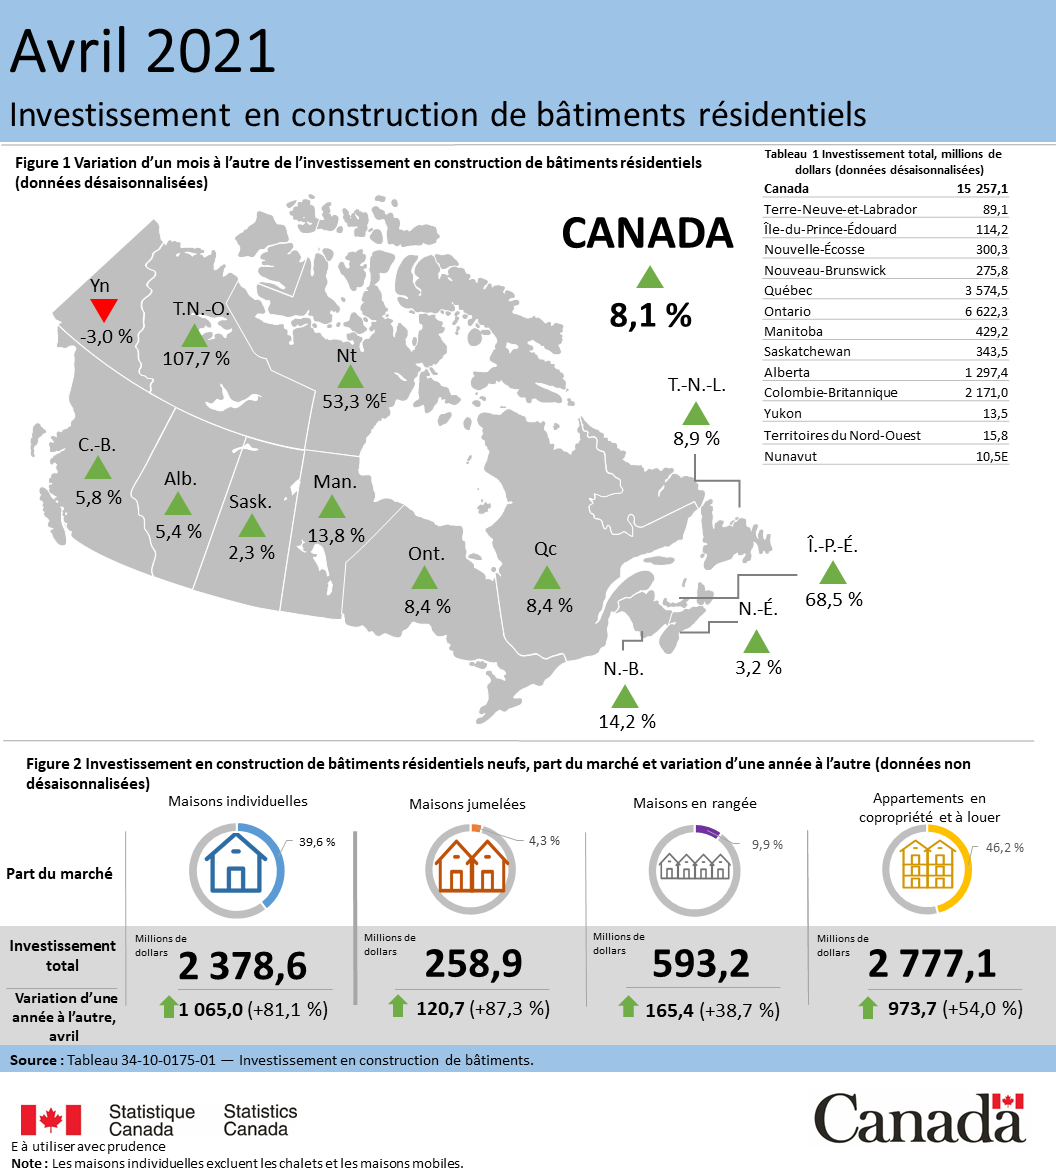 Vignette de l'infographie 1: Investissement en construction de bâtiments résidentiels, avril 2021